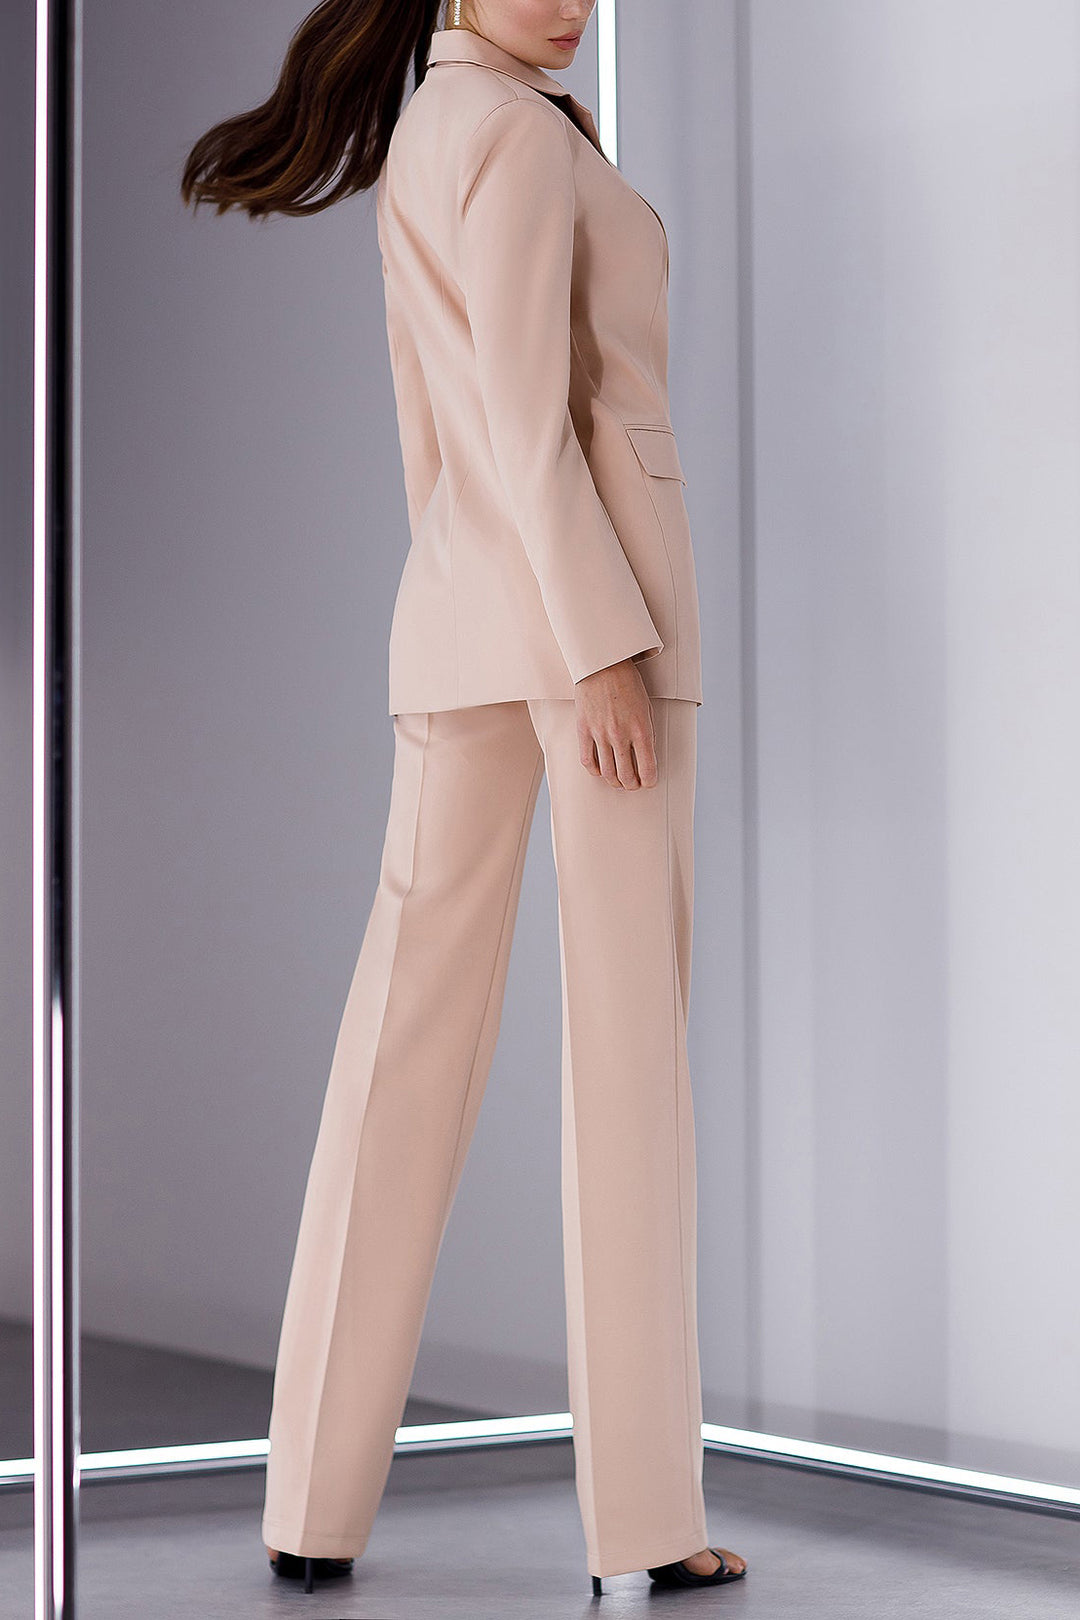 3 Piece Peak Lapel Single Double Slim Fit Women Suit (Blazer+Vest+Pants）